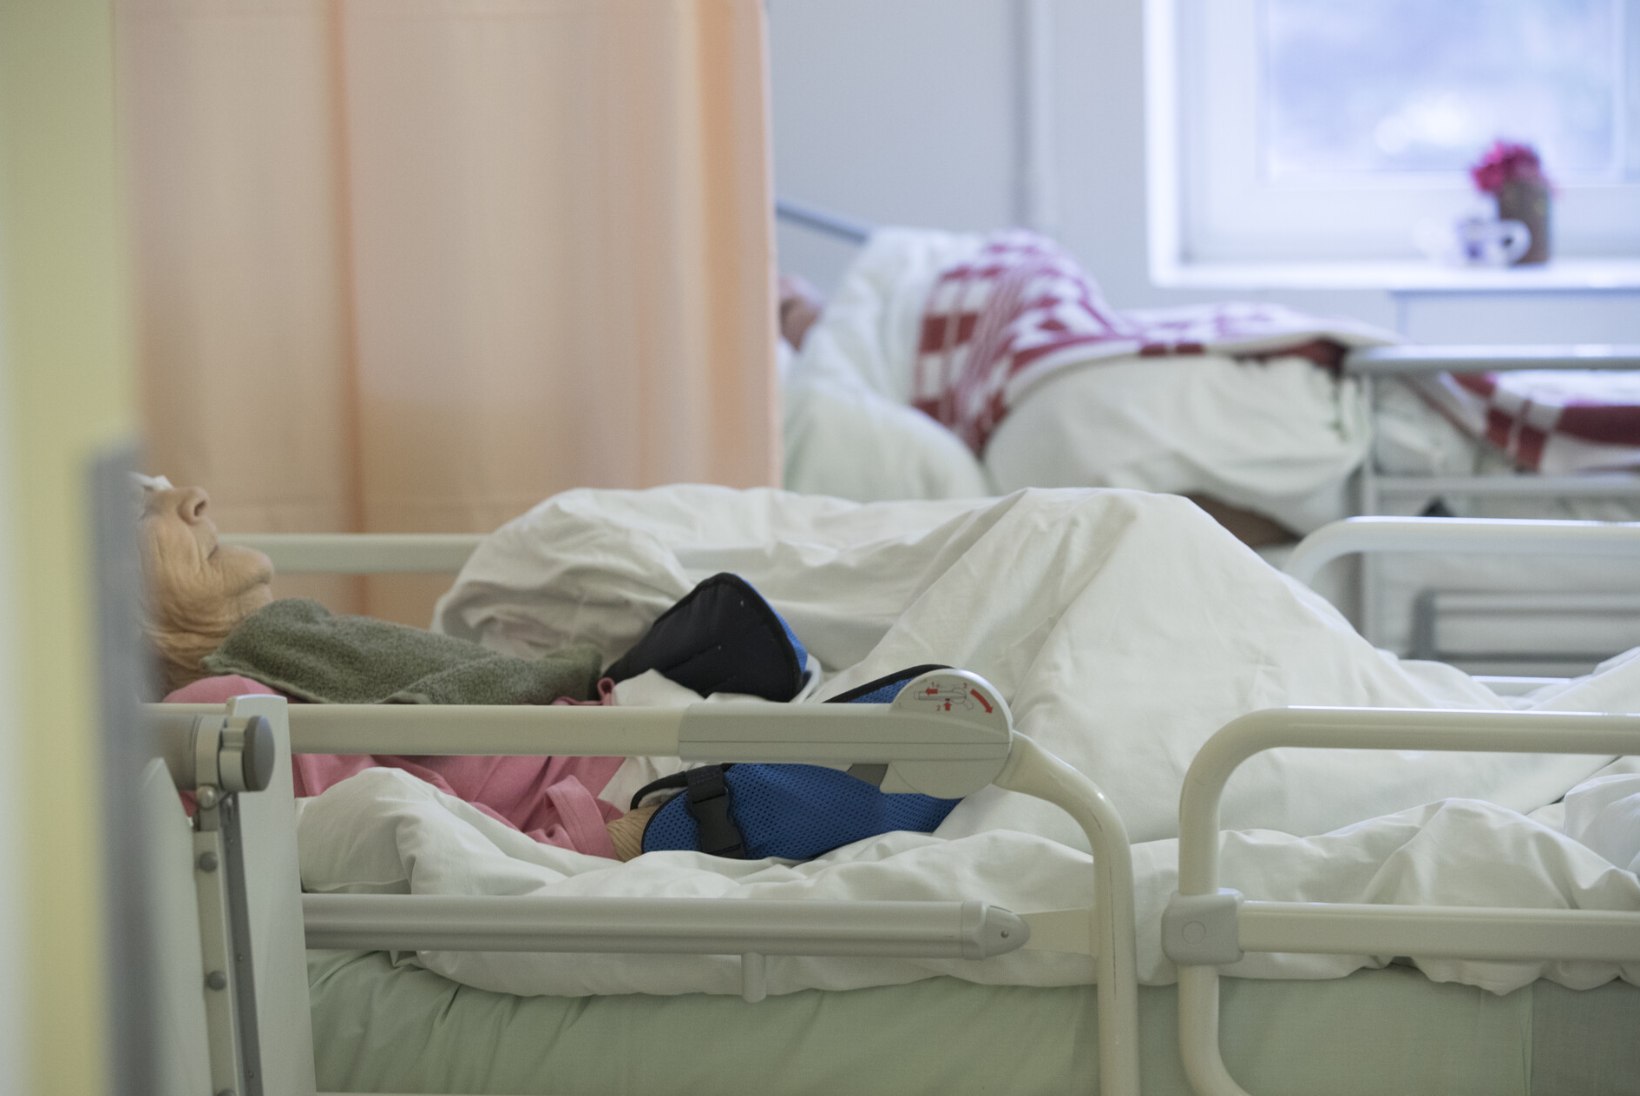 ÕL ARHIIV | HIRM JÄÄDA ELAVAKS JUURVILJAKS! Mille taha on takerdunud patsiendi elulõpu tahteavalduse loomine?